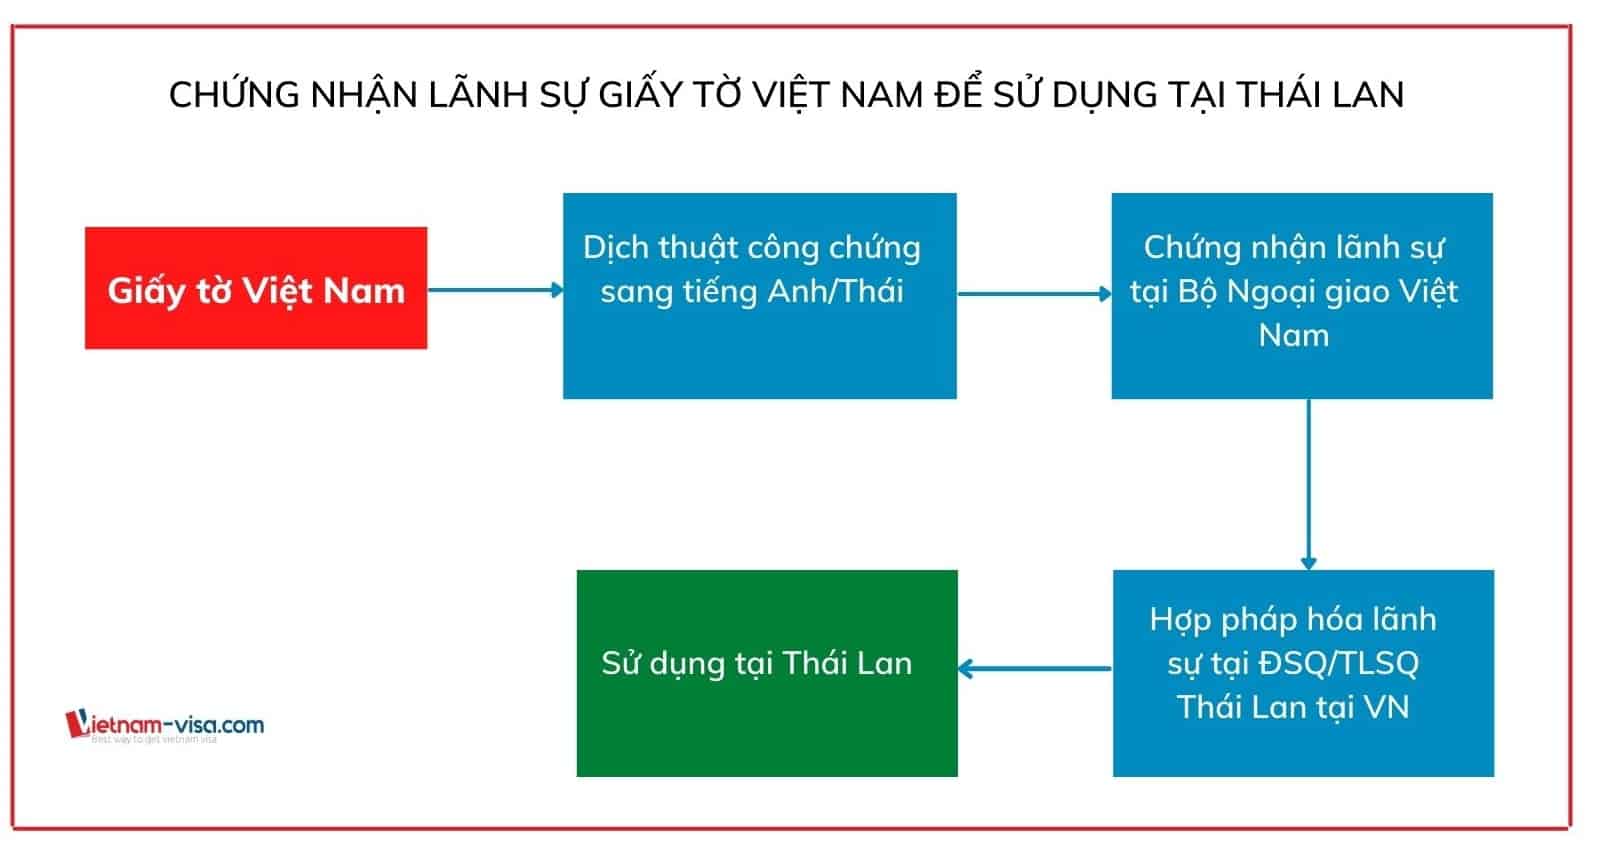 Thủ tục chứng nhận lãnh sự Thái Lan đối với giấy tờ Việt nam